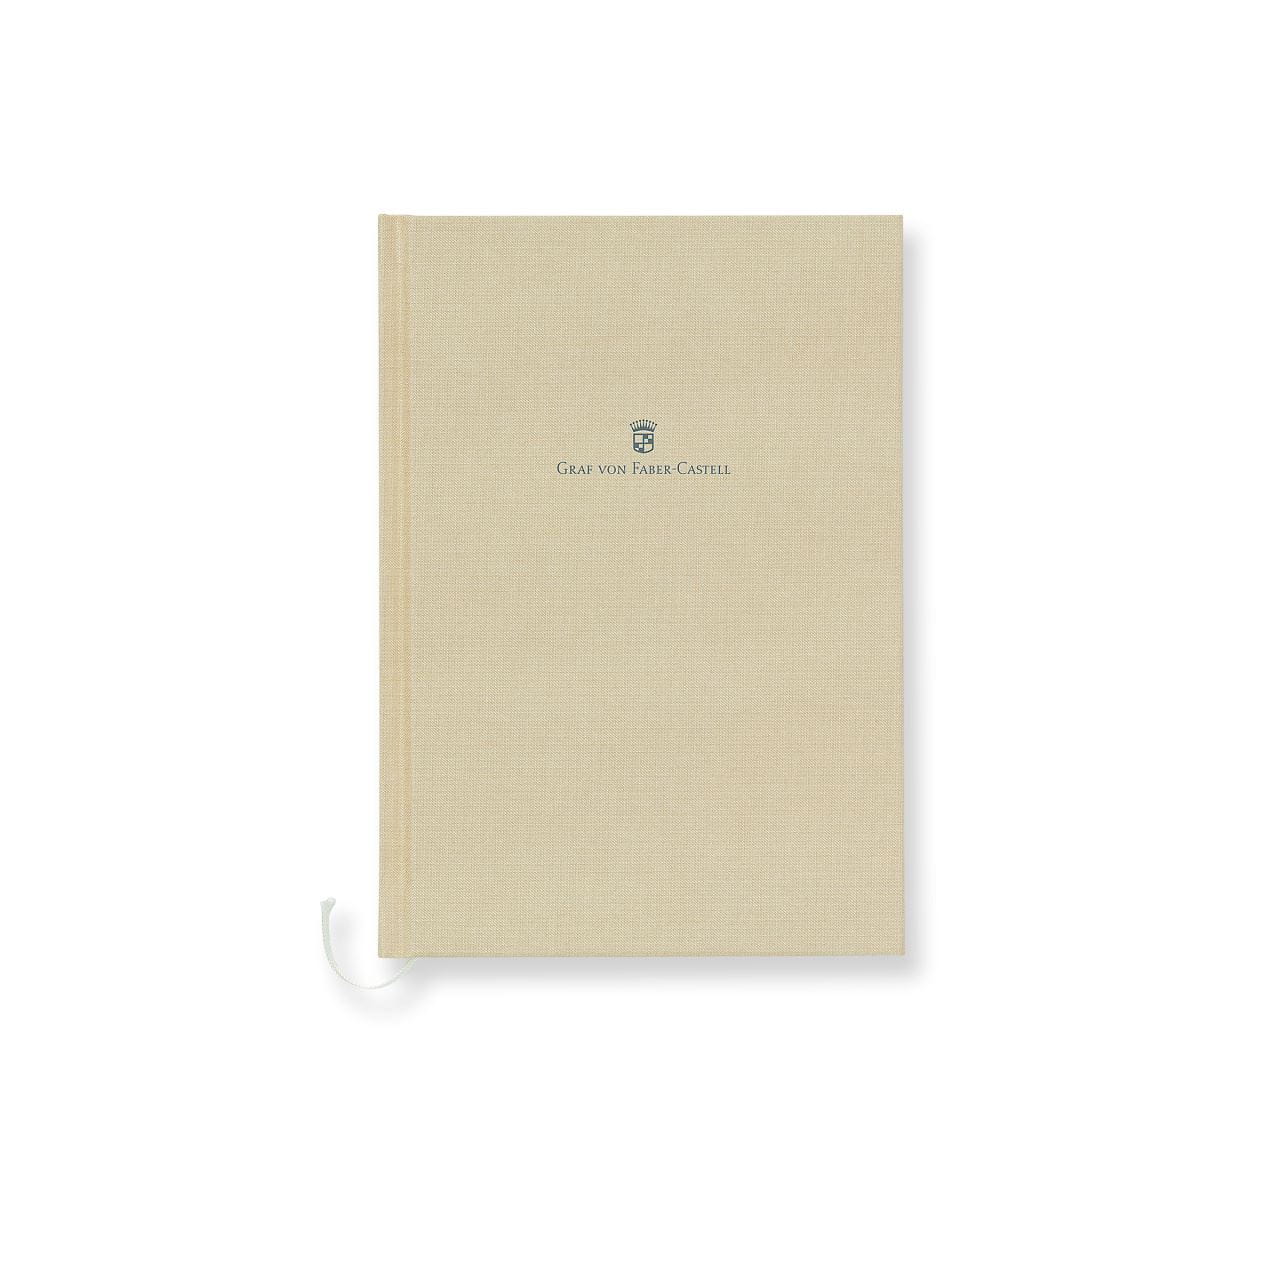 Graf-von-Faber-Castell - Book con copertina in lino formato A5, sabbia